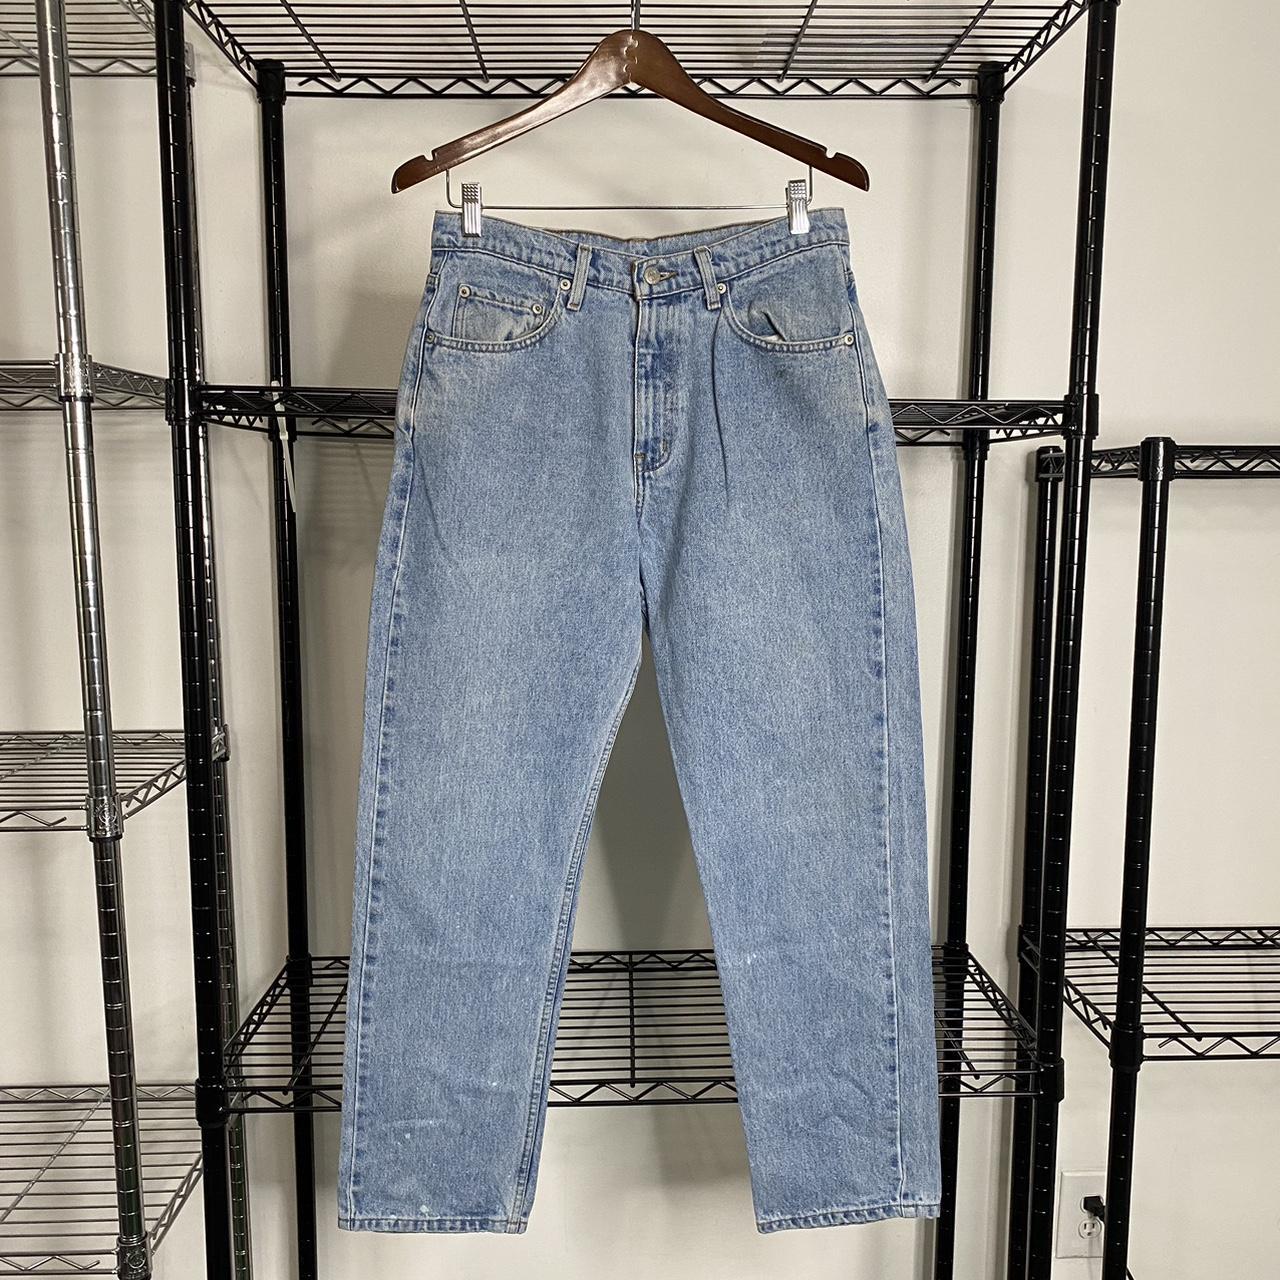 Vintage polo Ralph Lauren polo jeans co... - Depop